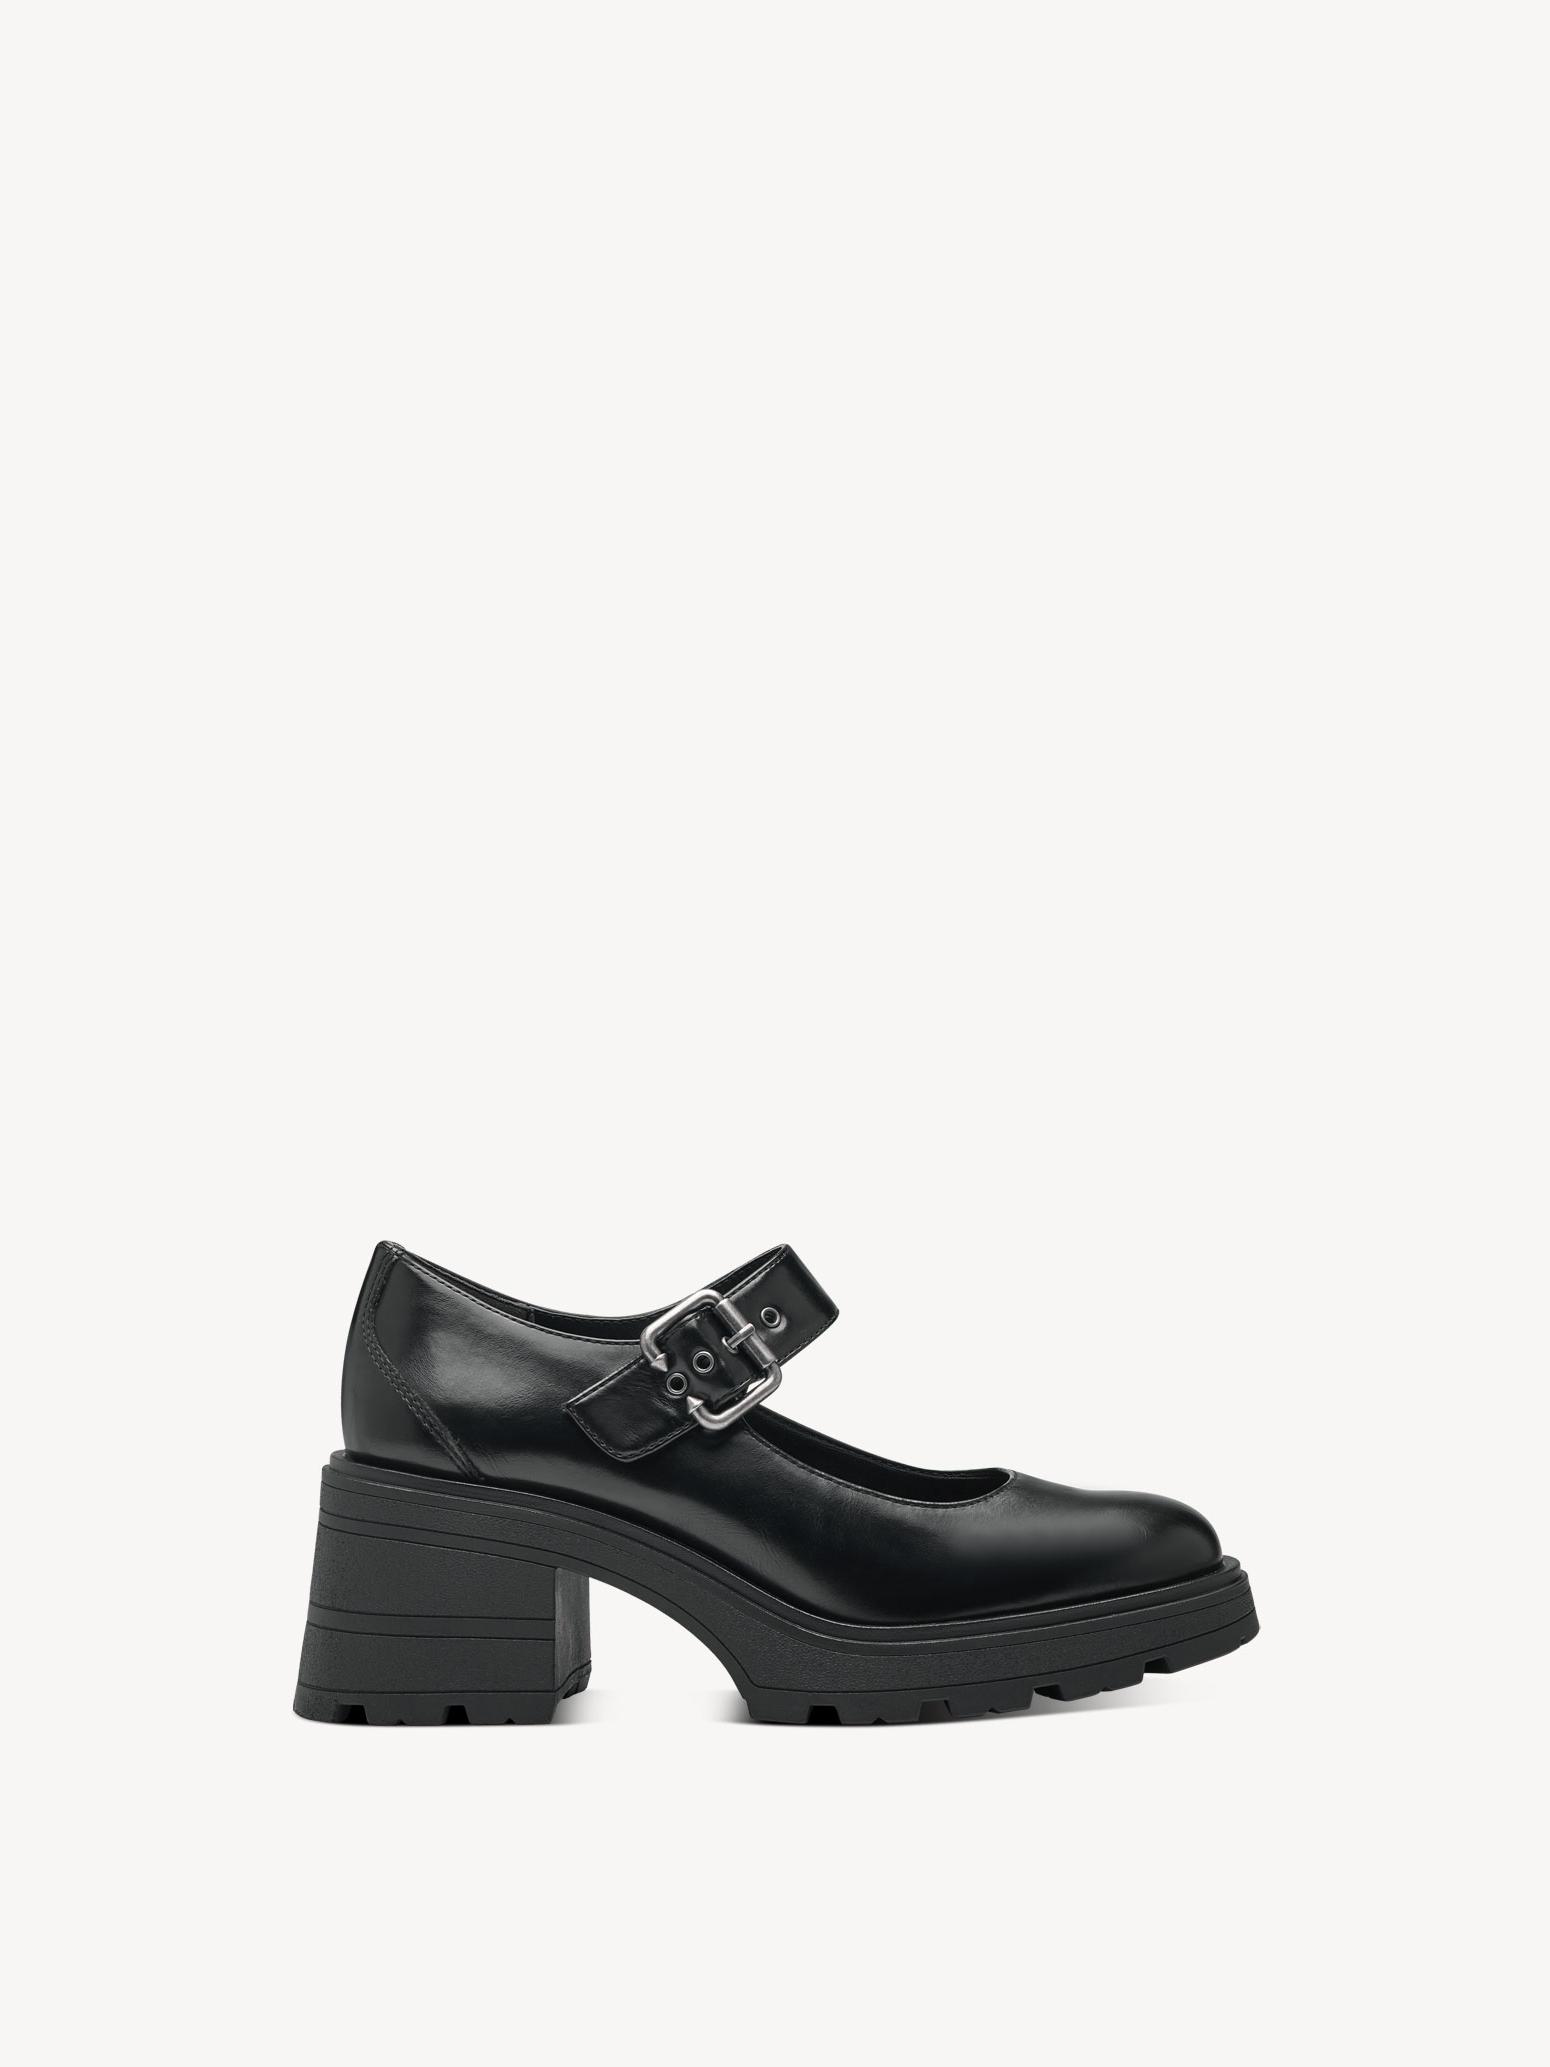 Туфли женские Tamaris 1-24430-41-001 черные 40 RU